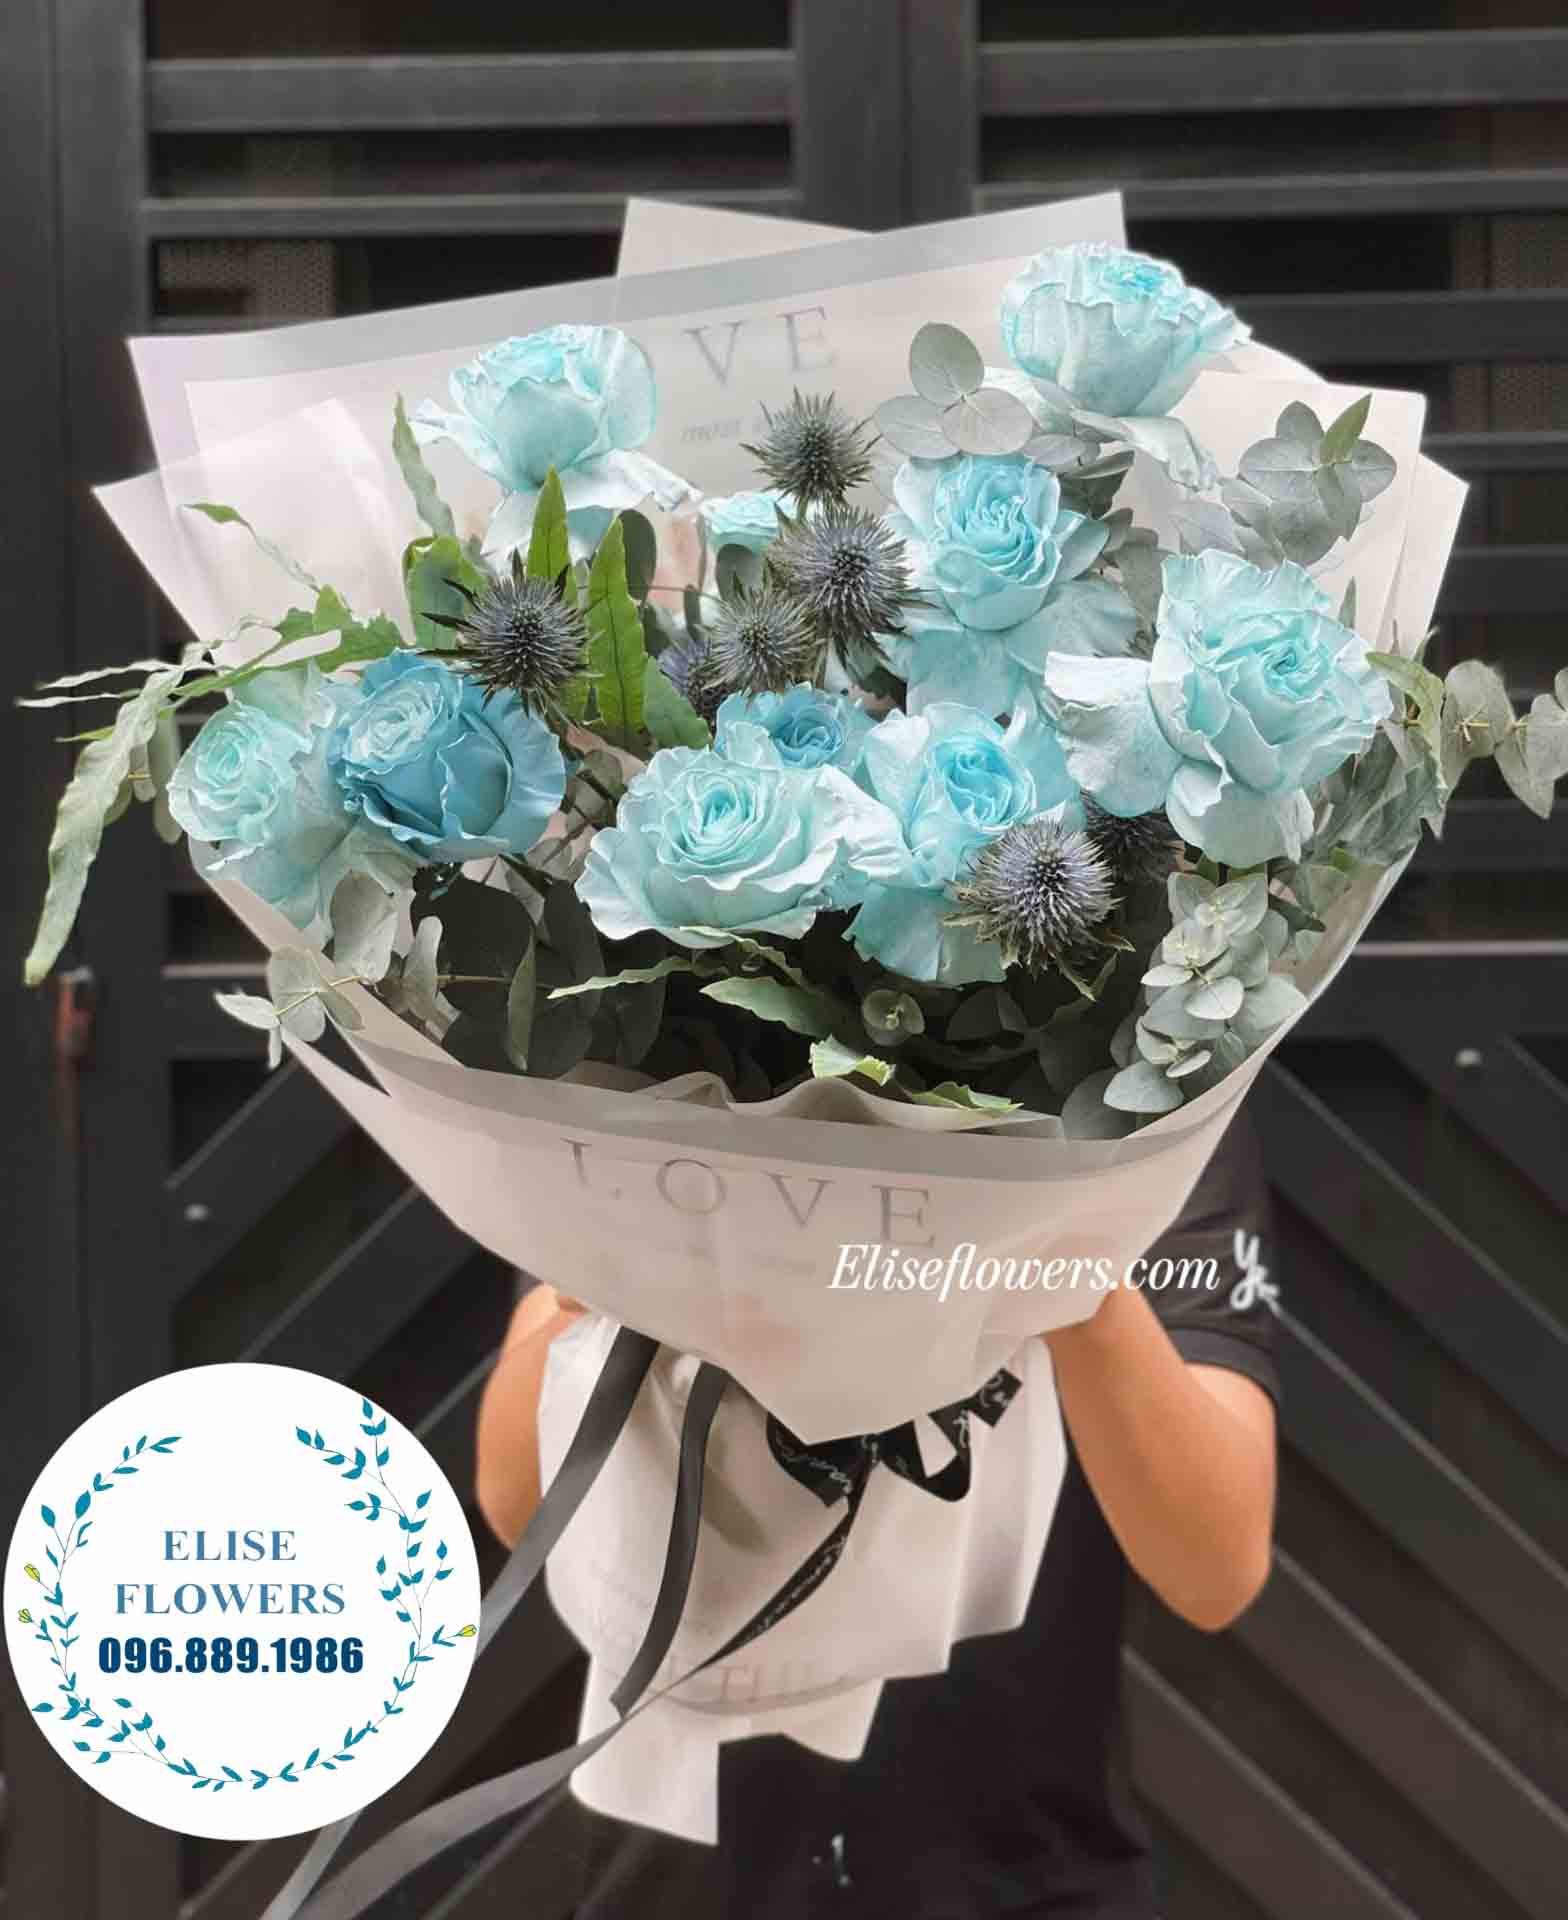 Bó hoa hồng đẹp tặng sinh nhật ở quận Cầu Giấy, Hà Nội. Dịch vụ điện hoa chúc mừng sinh nhật ở quận Hoàn Kiếm, Hà Nội